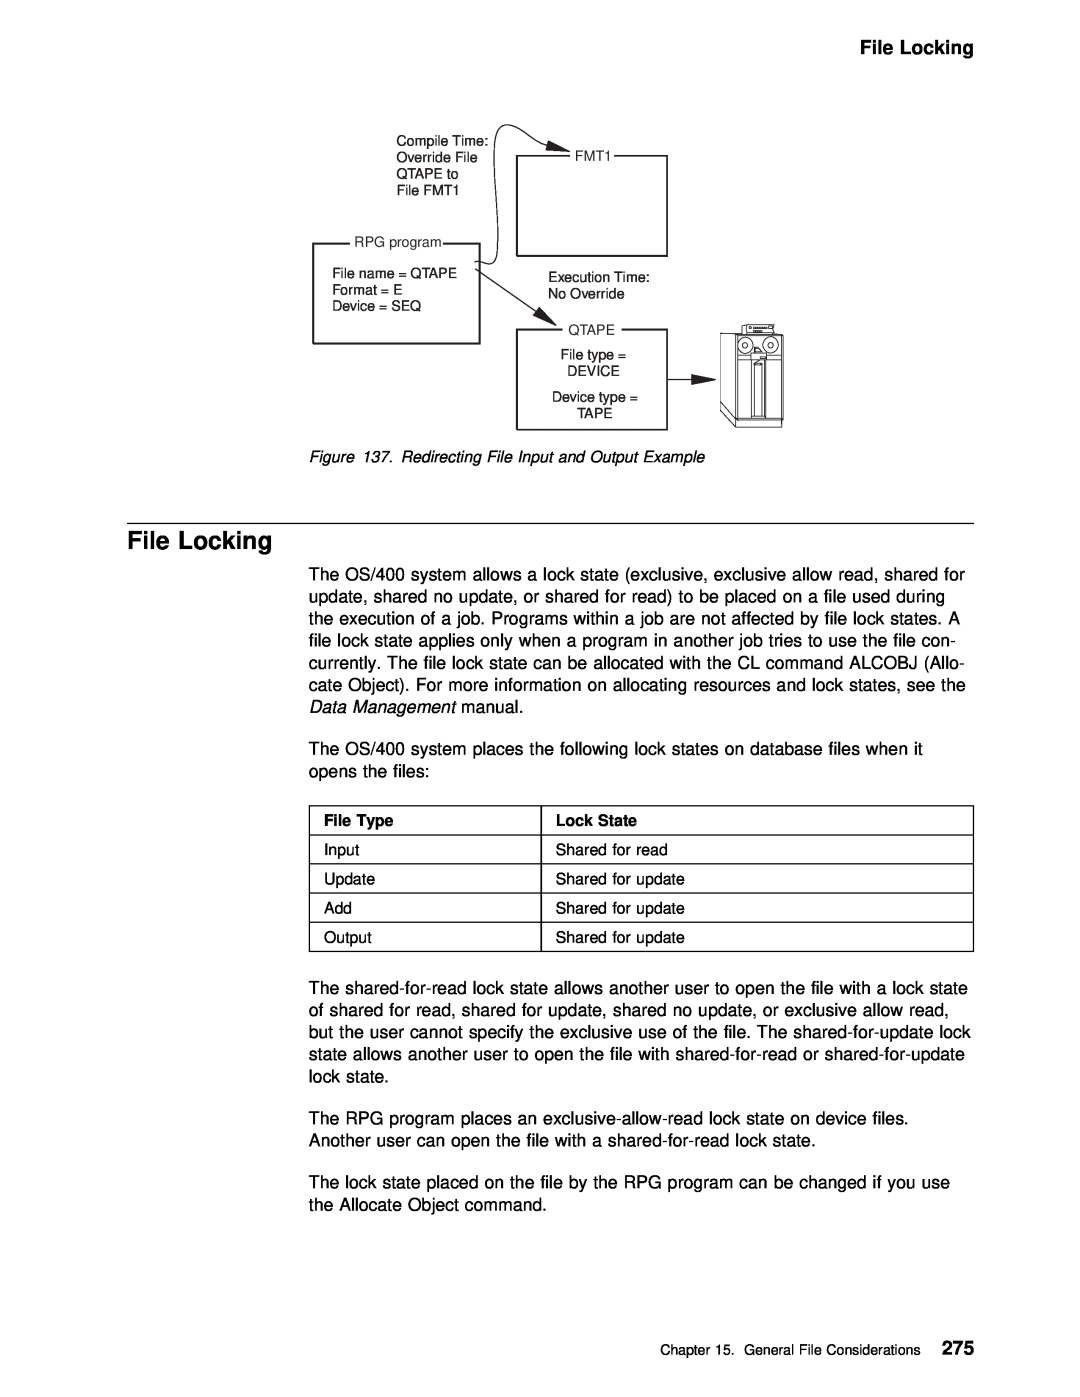 IBM AS/400 manual File Locking 